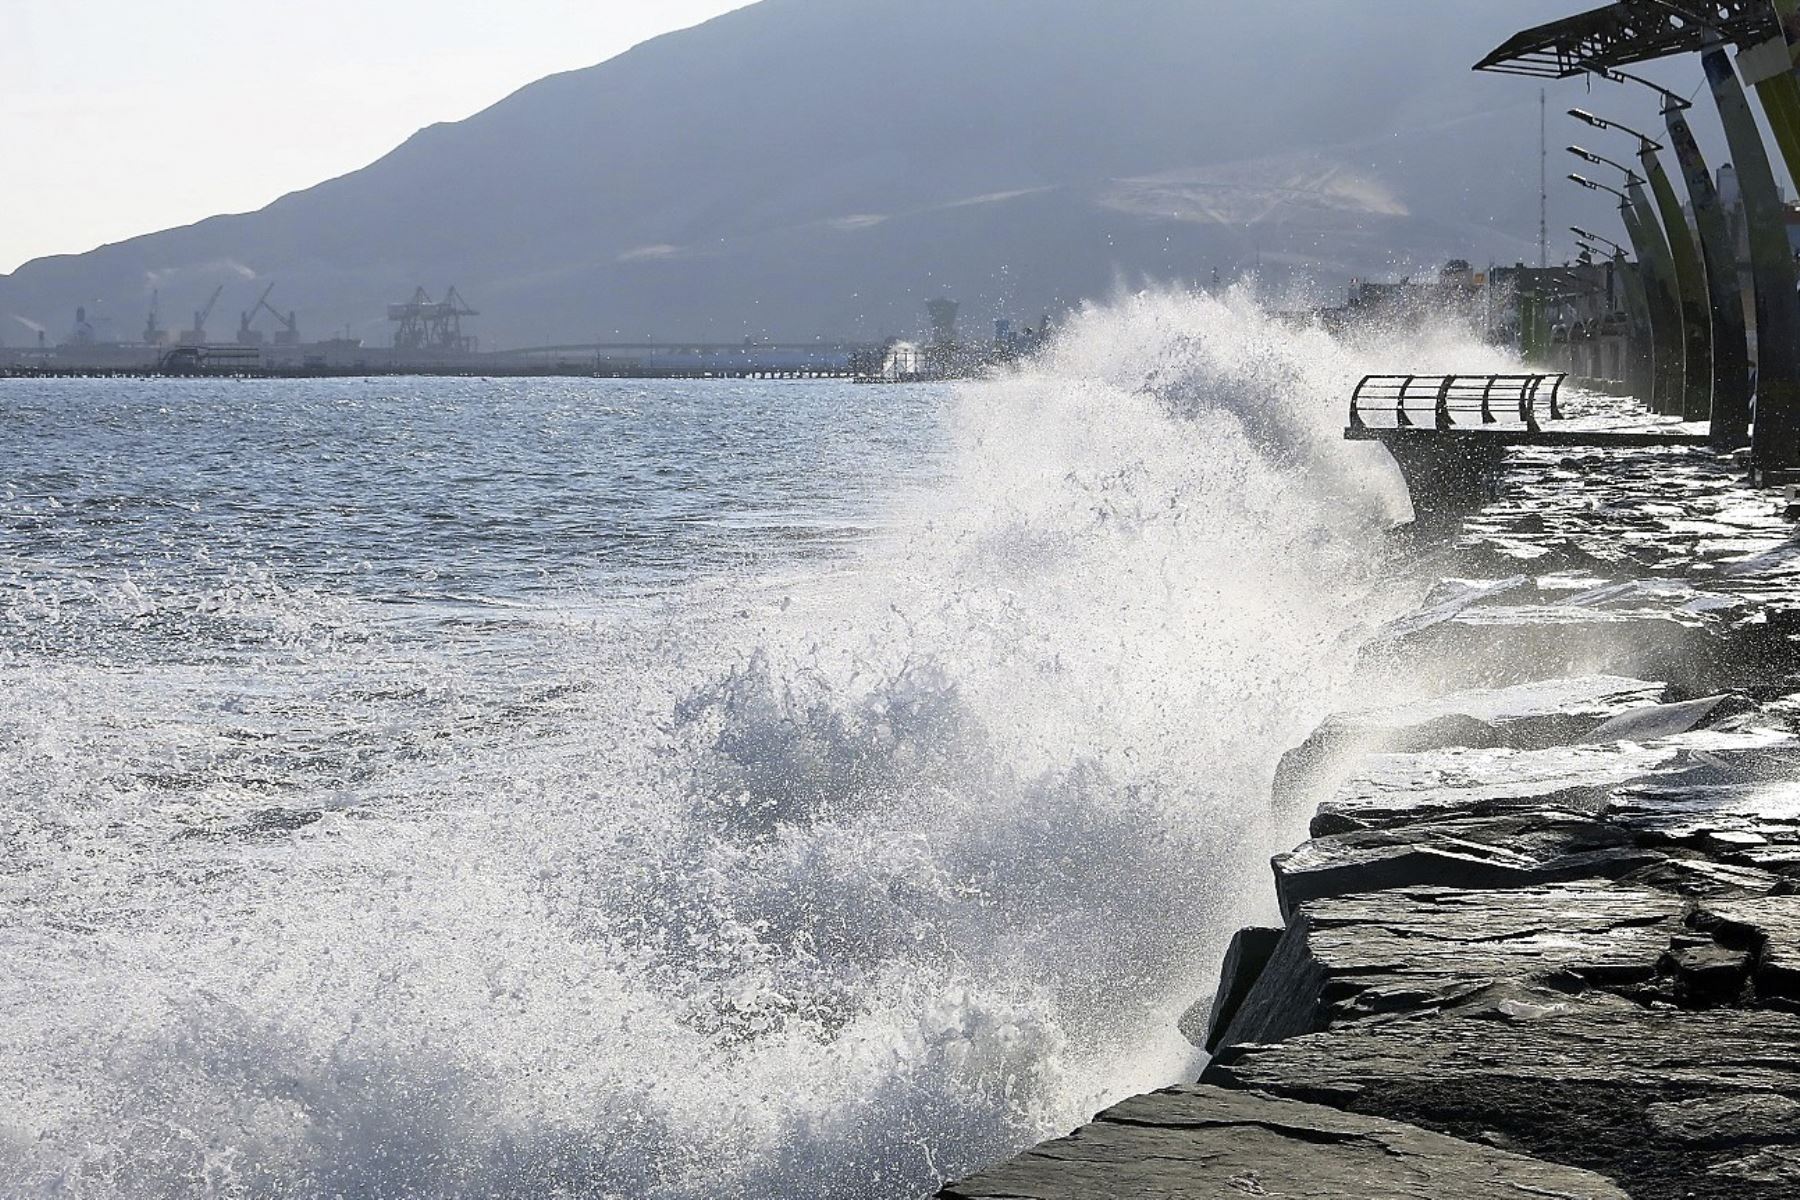 La ocurrencia de oleajes de ligera a moderada intensidad en todo el litoral del país será hasta el lunes 23 de agosto, informó la Dirección de Hidrografía y Navegación de la Marina de Guerra del Perú. ANDINA/Difusión